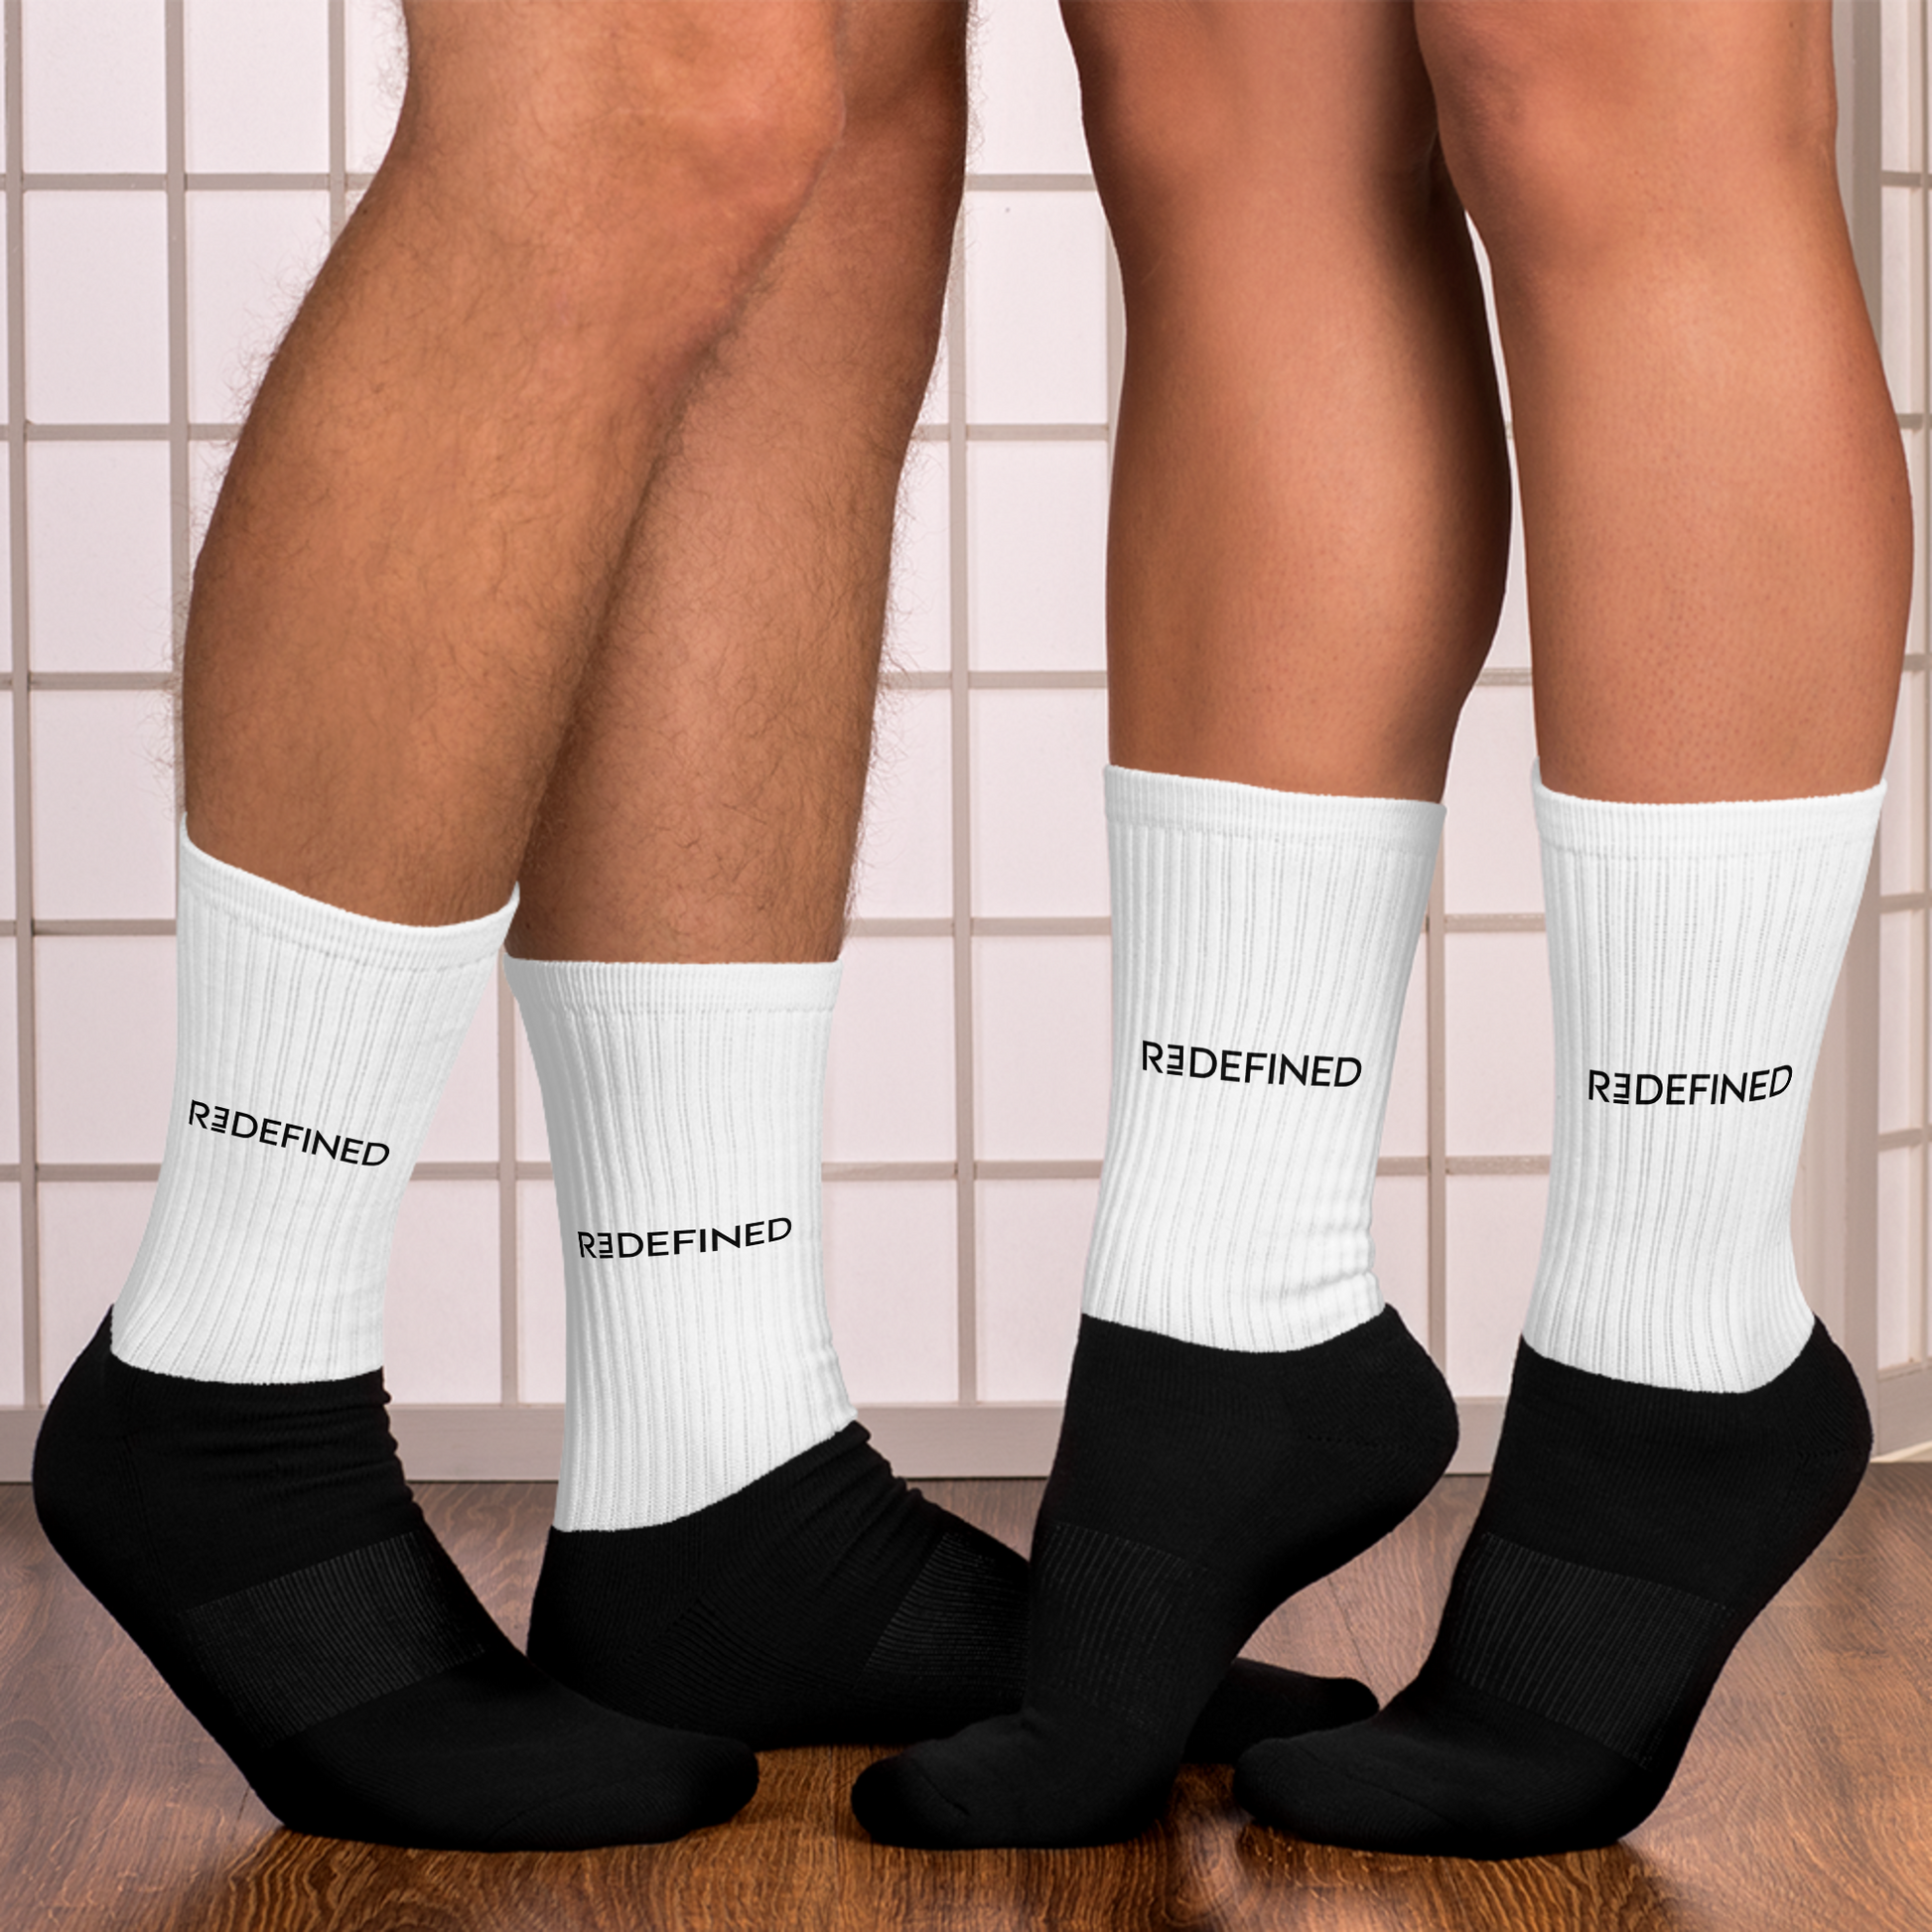 Redefined Socks - Redefined